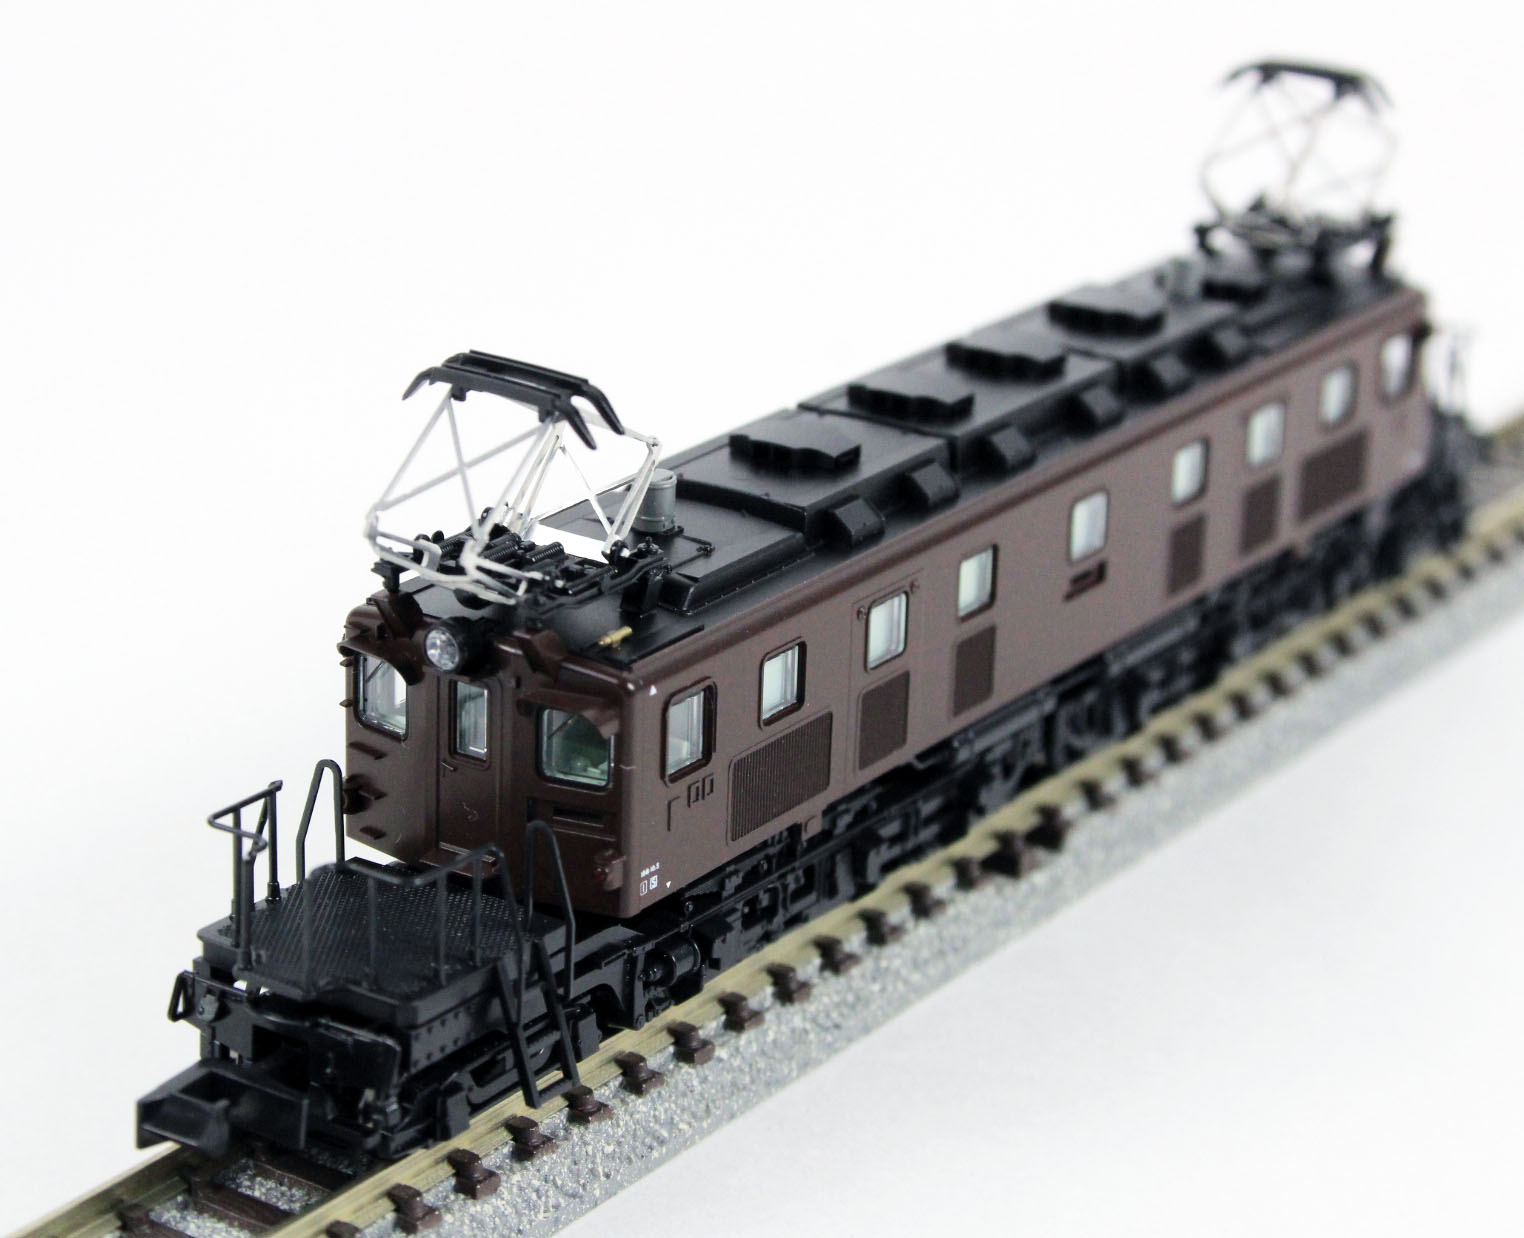 KATO Nゲージ EF57 3069 鉄道模型 電気機関車 www.krzysztofbialy.com